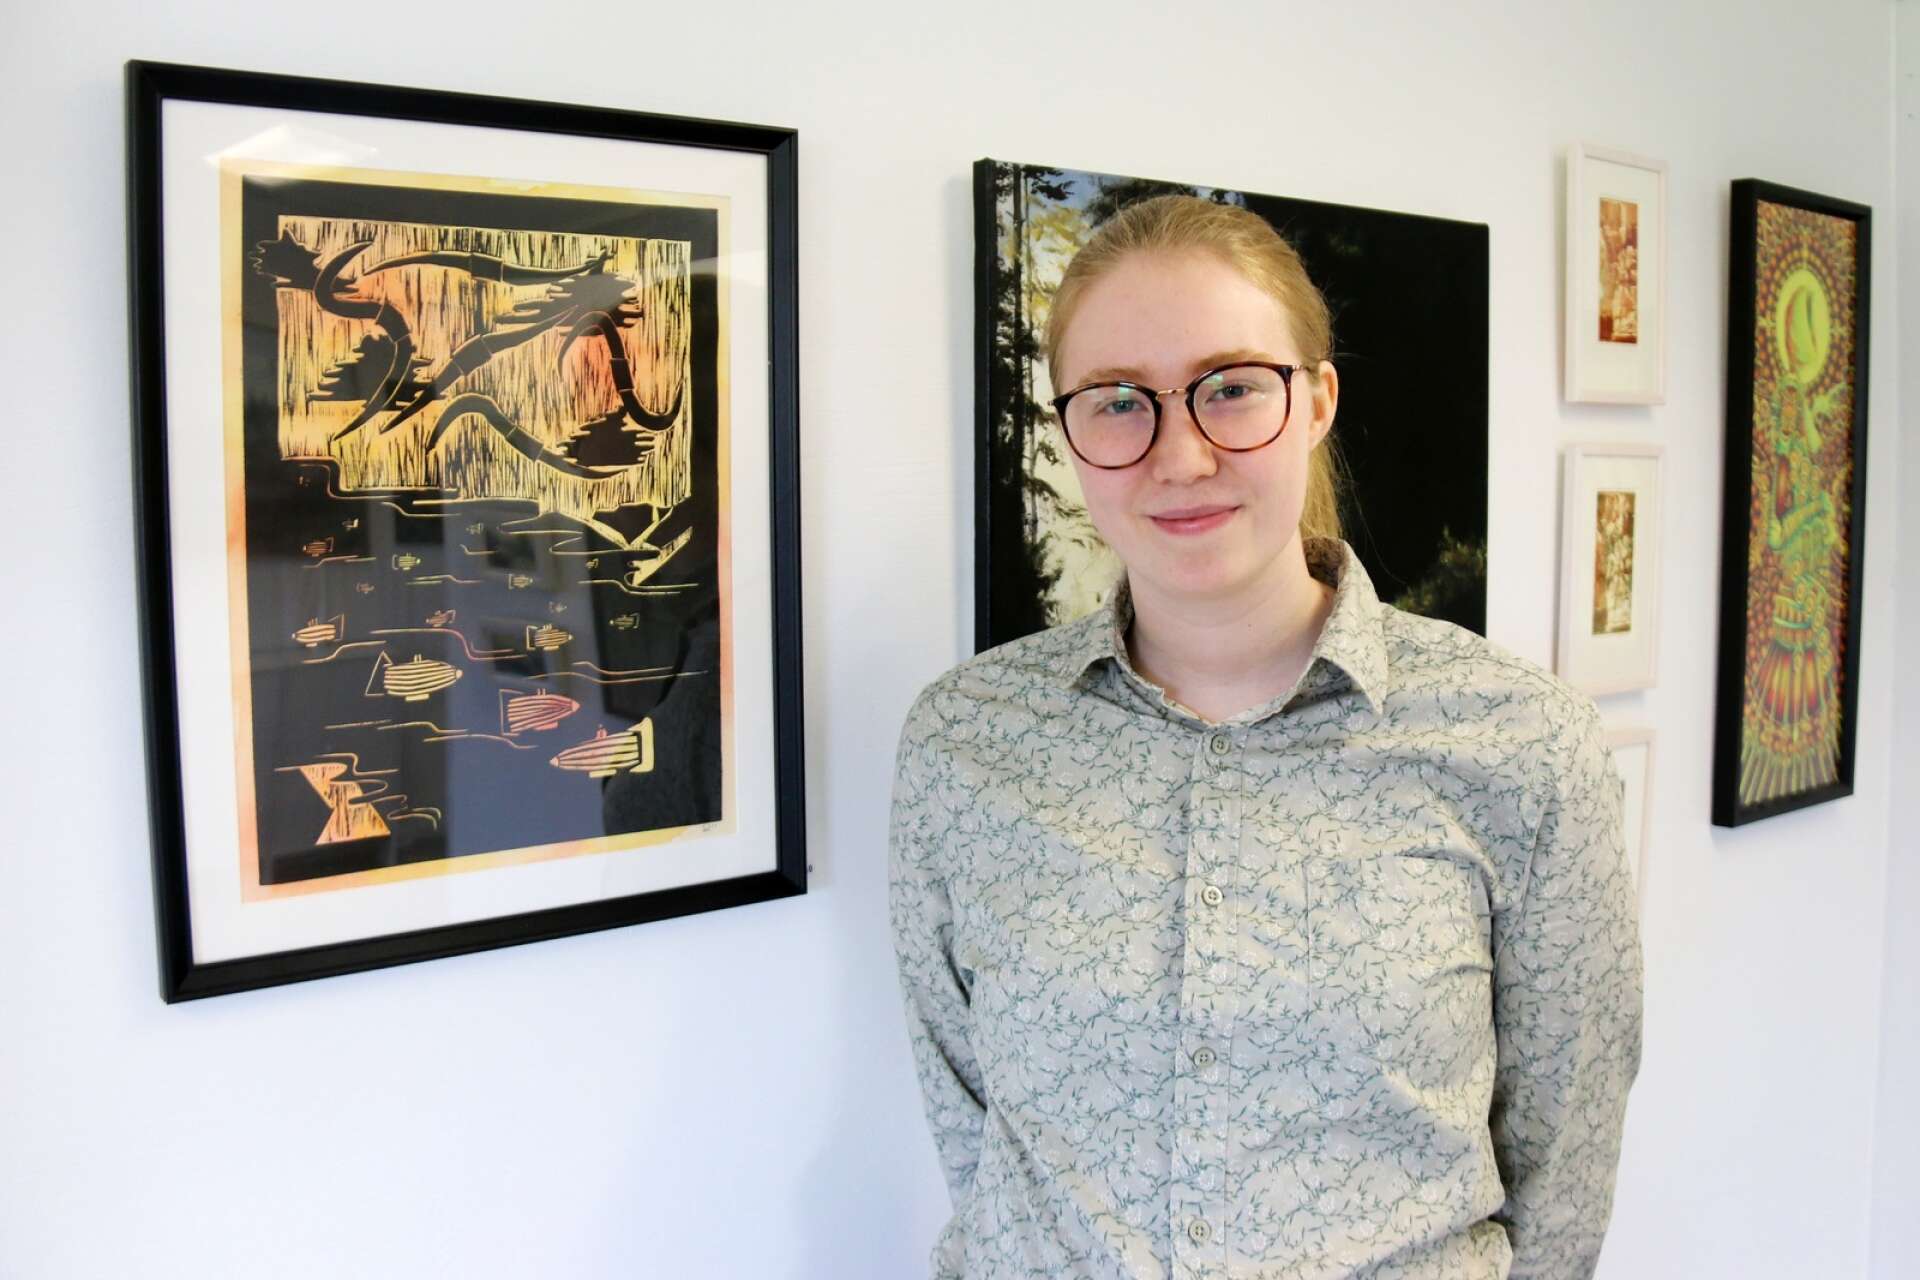 Senare i vinter ställer Stina Larsen ut en egen större utställning och hon jobbar just nu frenetiskt för att få till grafiska alster att visa upp.